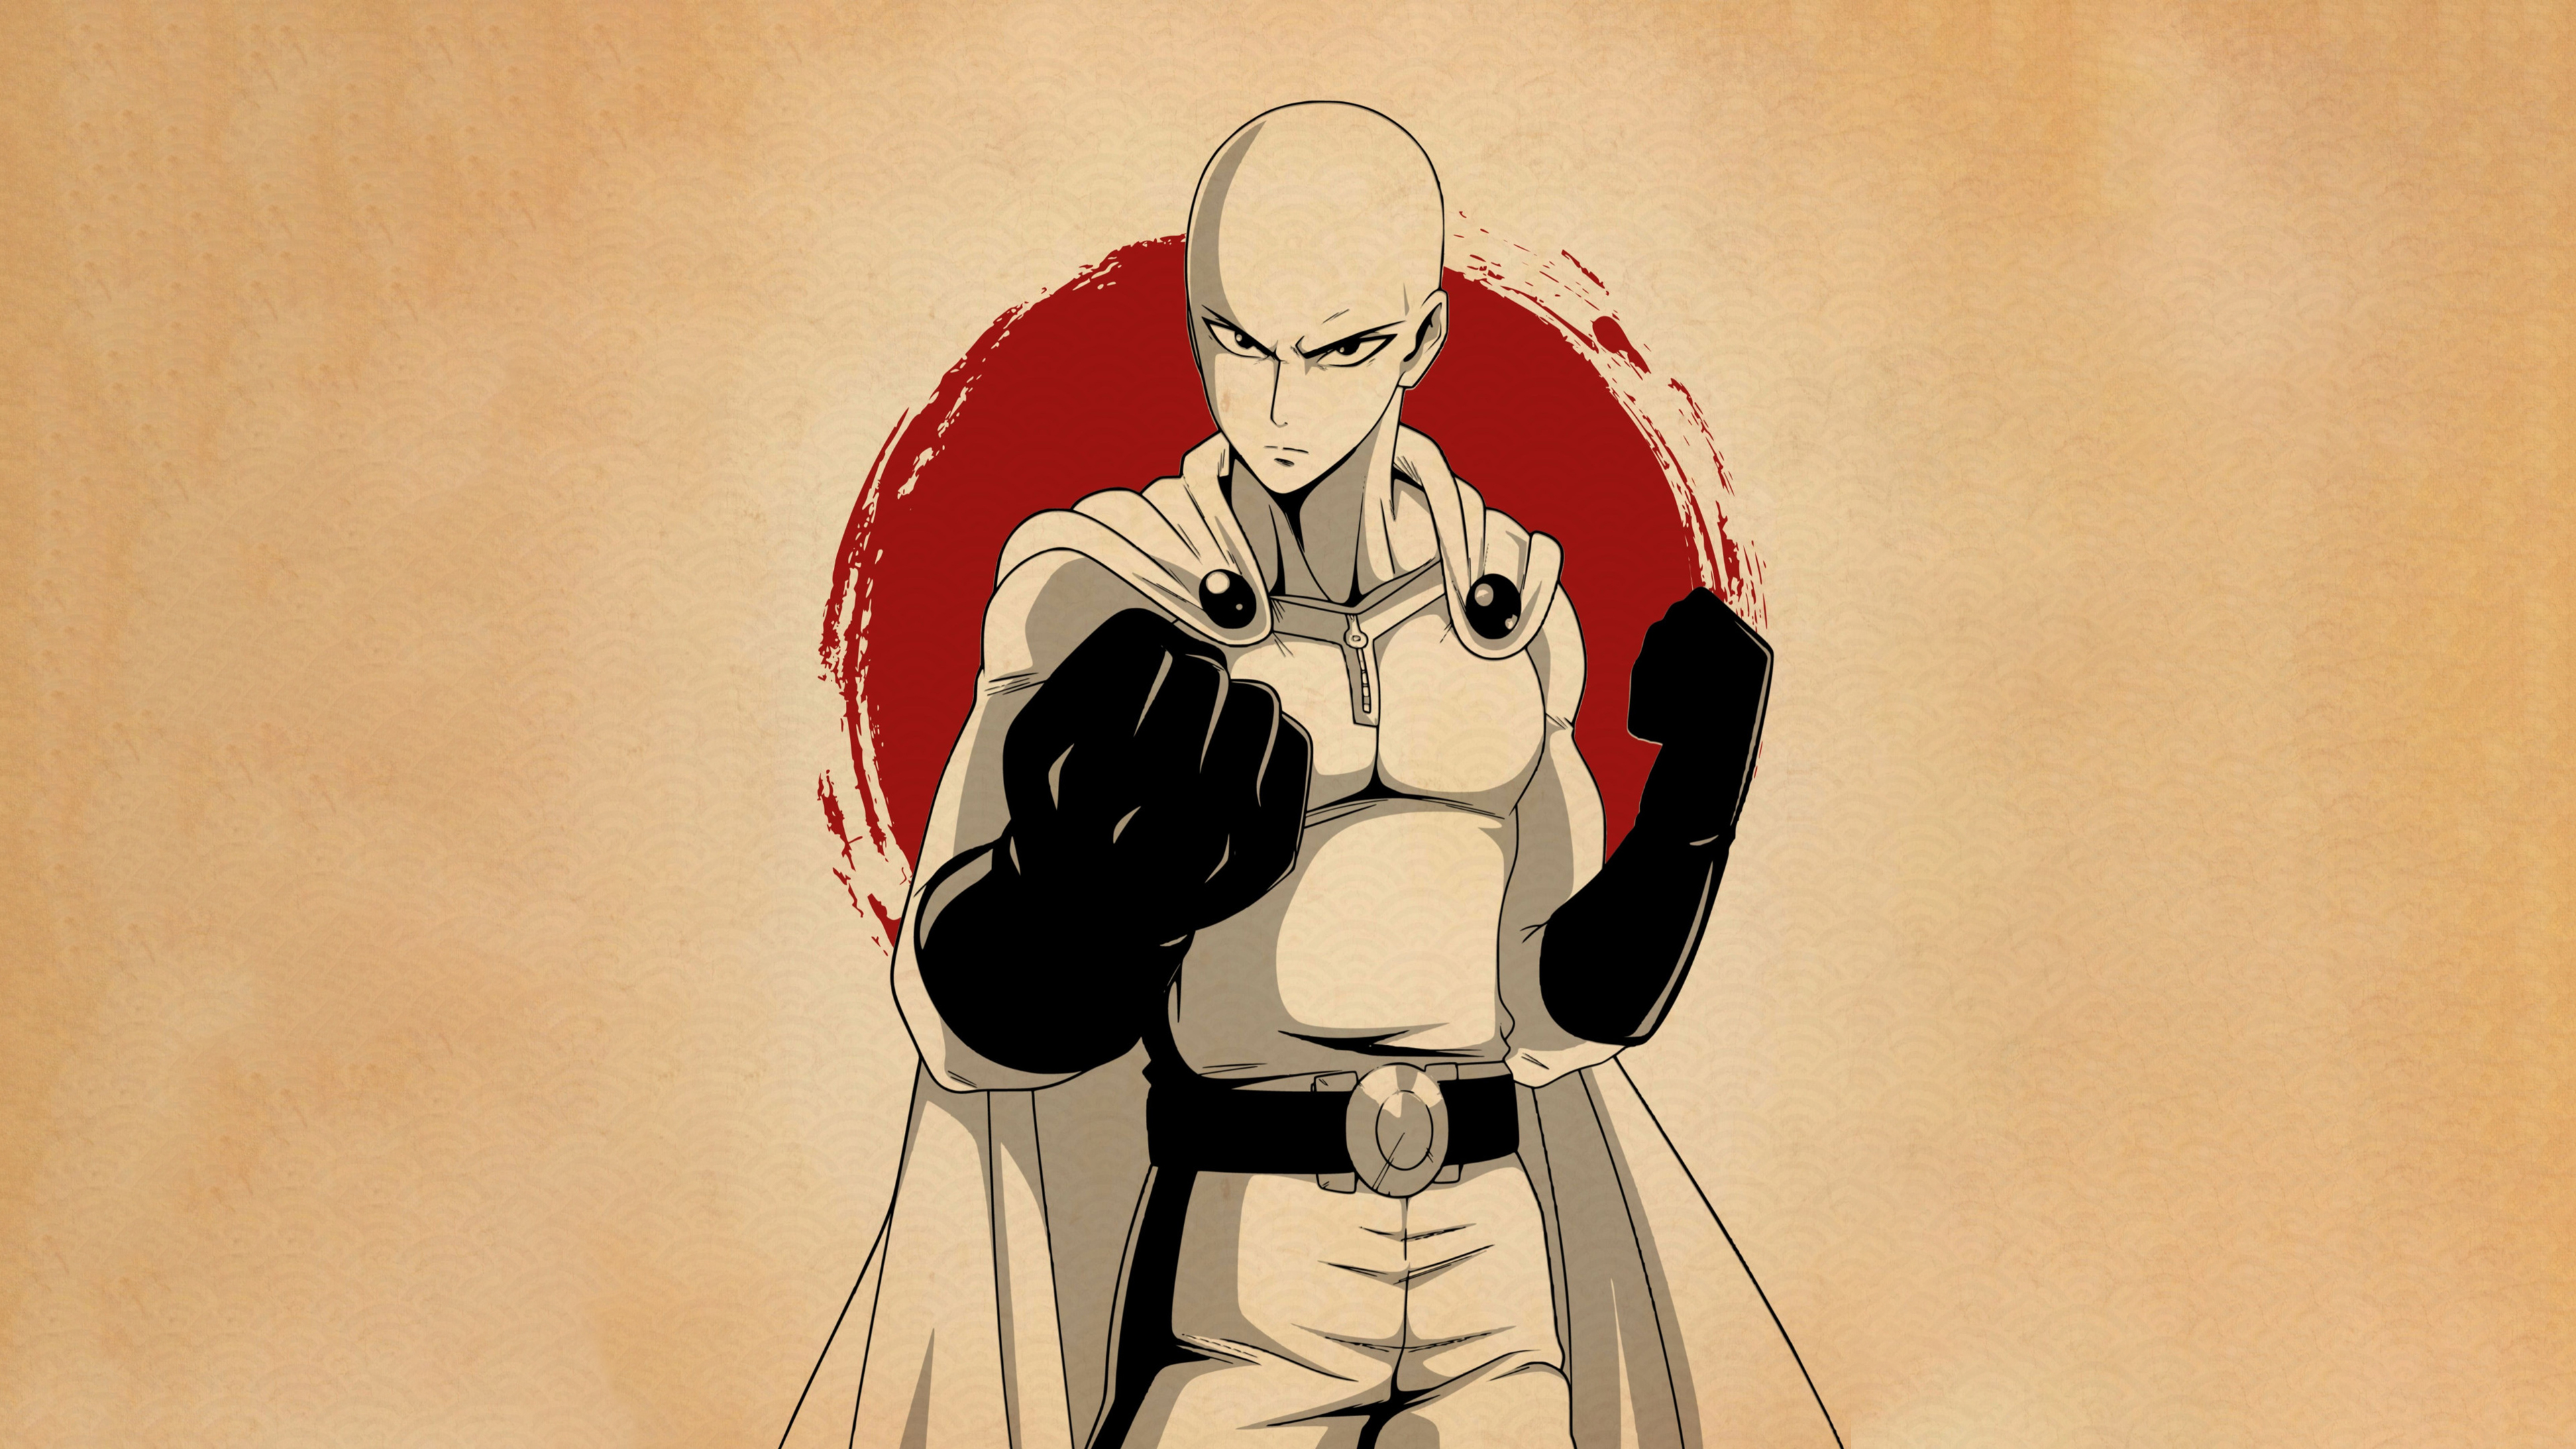 Anime One-Punch Man - Saitama Wallpaper Download